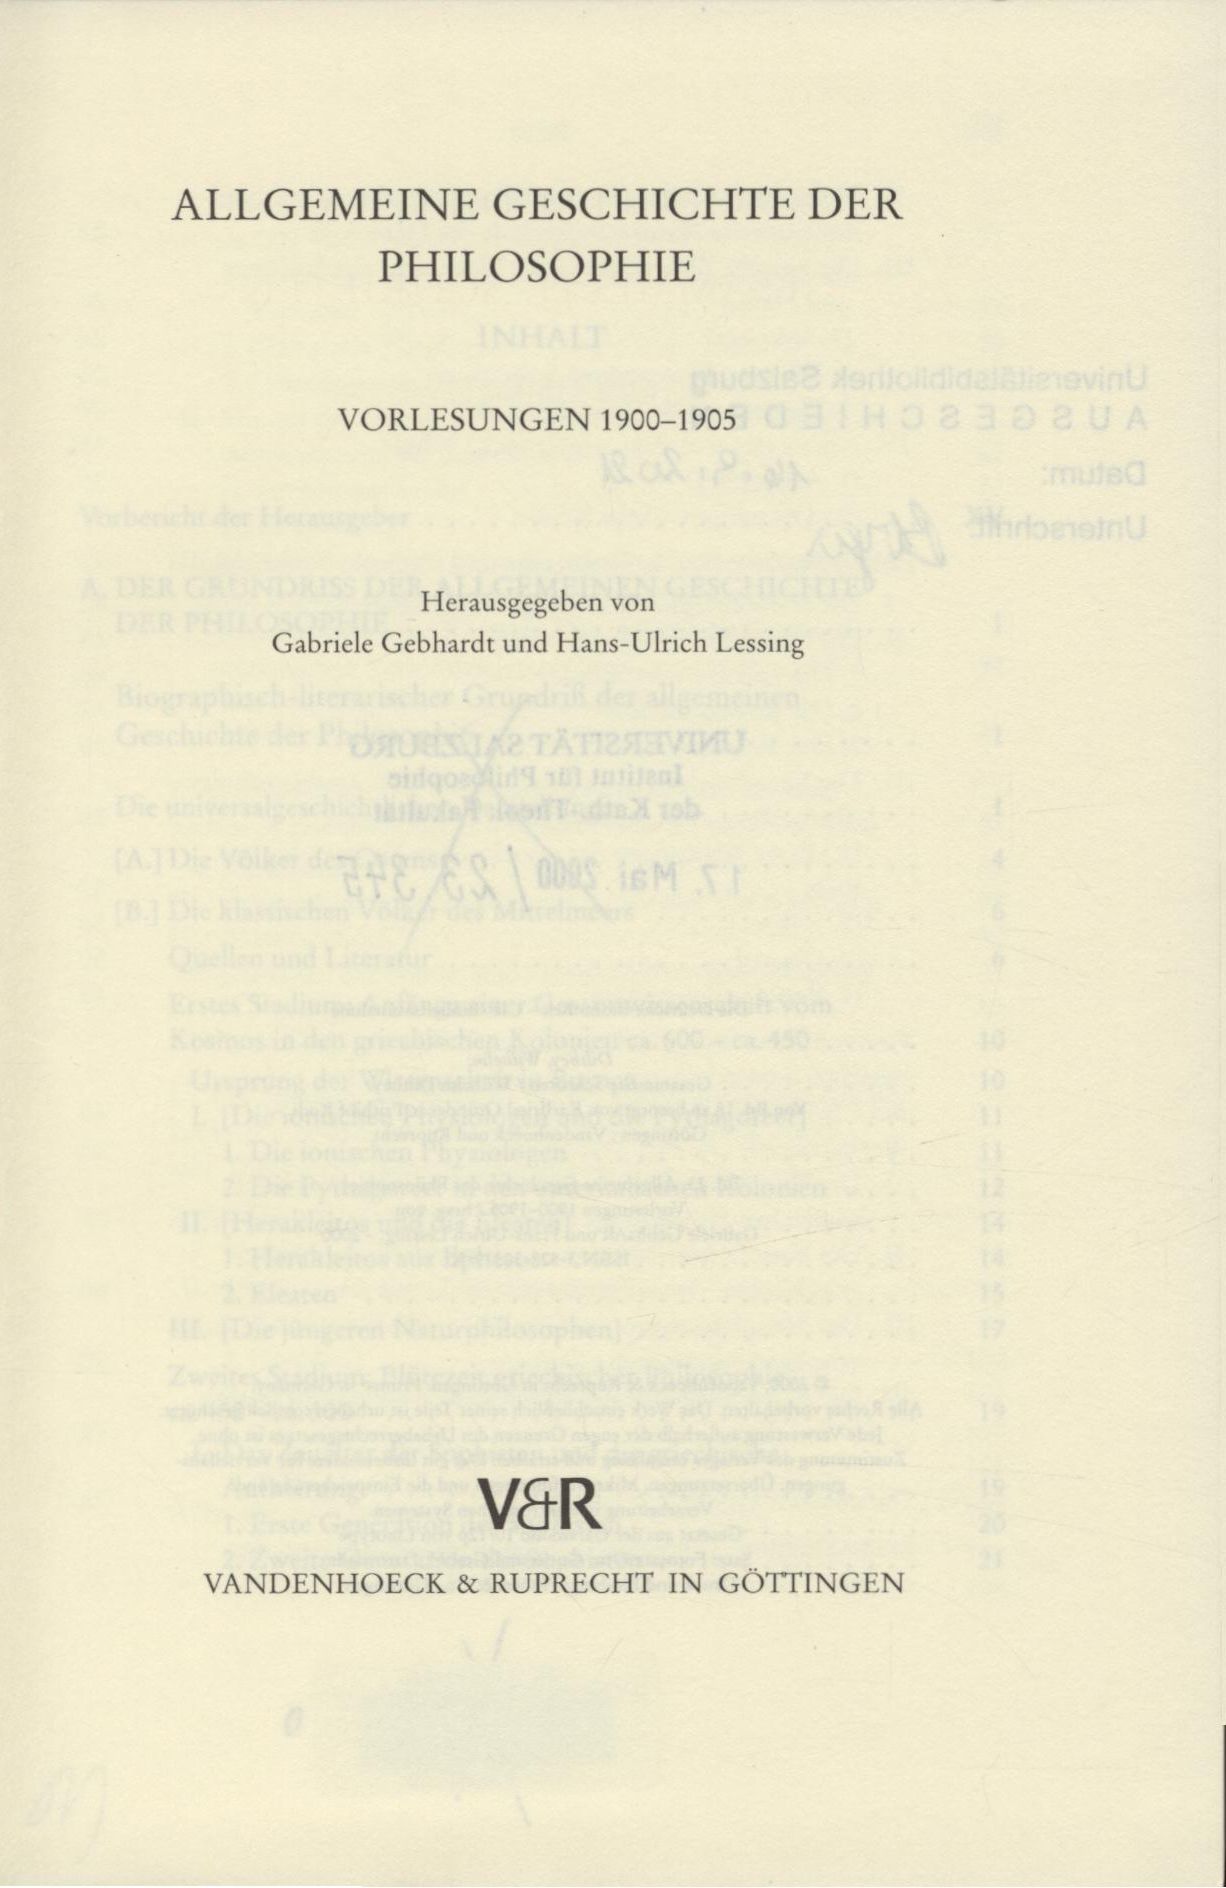 Allgemeine Geschichte der Philosophie Vorlesungen 1900 - 1905 - Dilthey, Wilhelm, Gabriele Gebhardt und Hans-Ulich Lessing